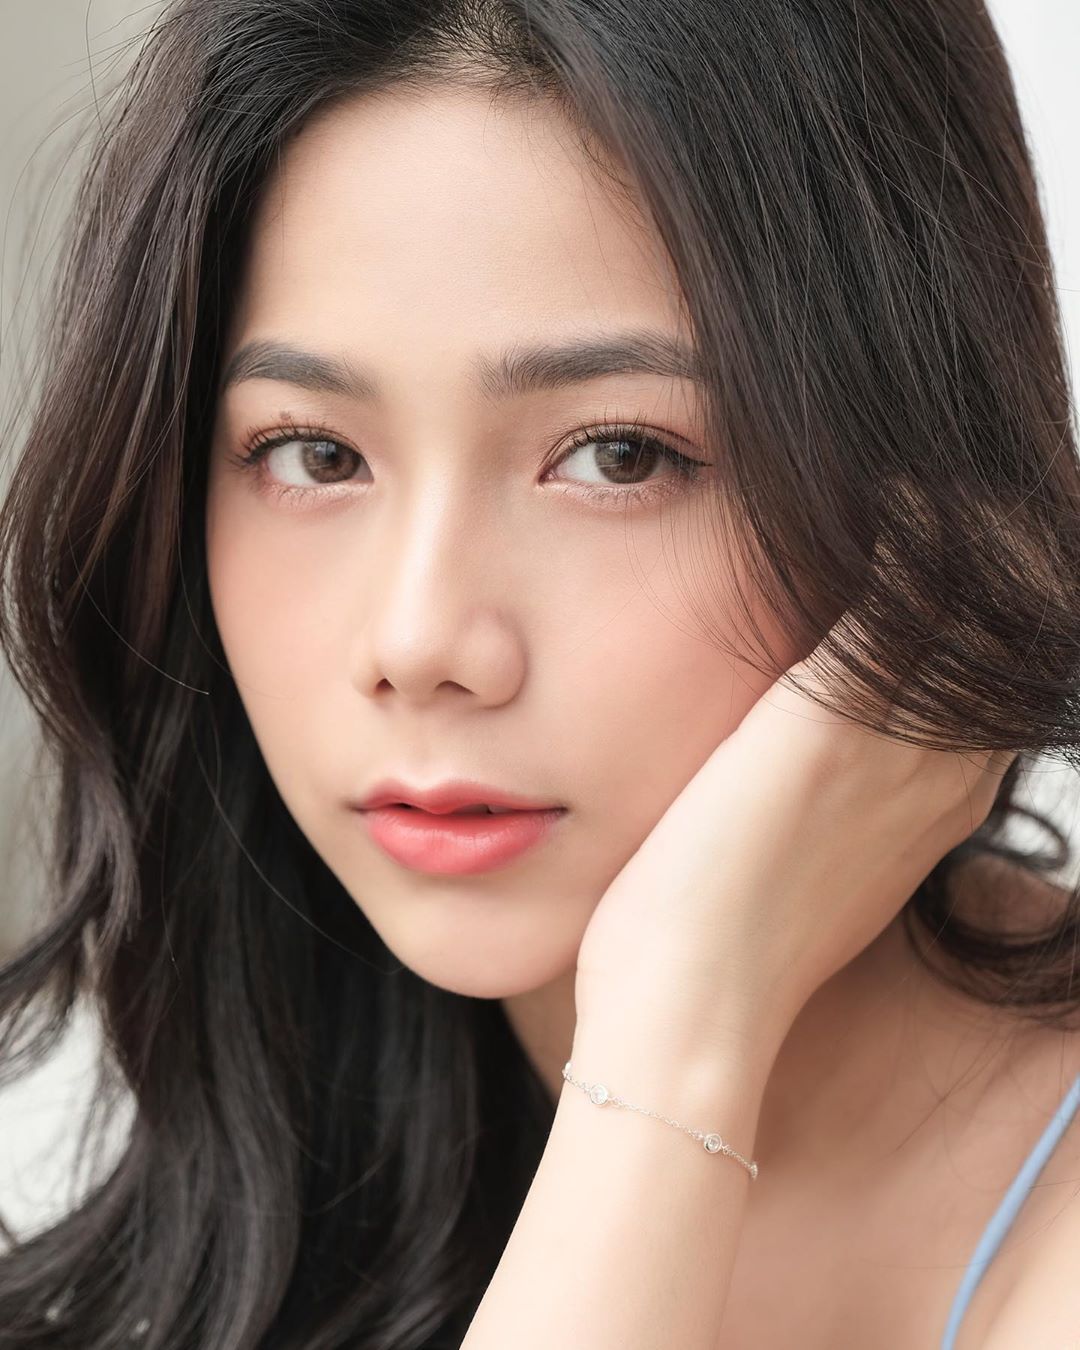 Lên báo nước ngoài vì bộ ảnh nội y gợi cảm, hot girl Việt có số đo 3 vòng 90-60-89 khiến người hâm mộ trầm trồ vì vẻ đẹp của cô - Ảnh 11.